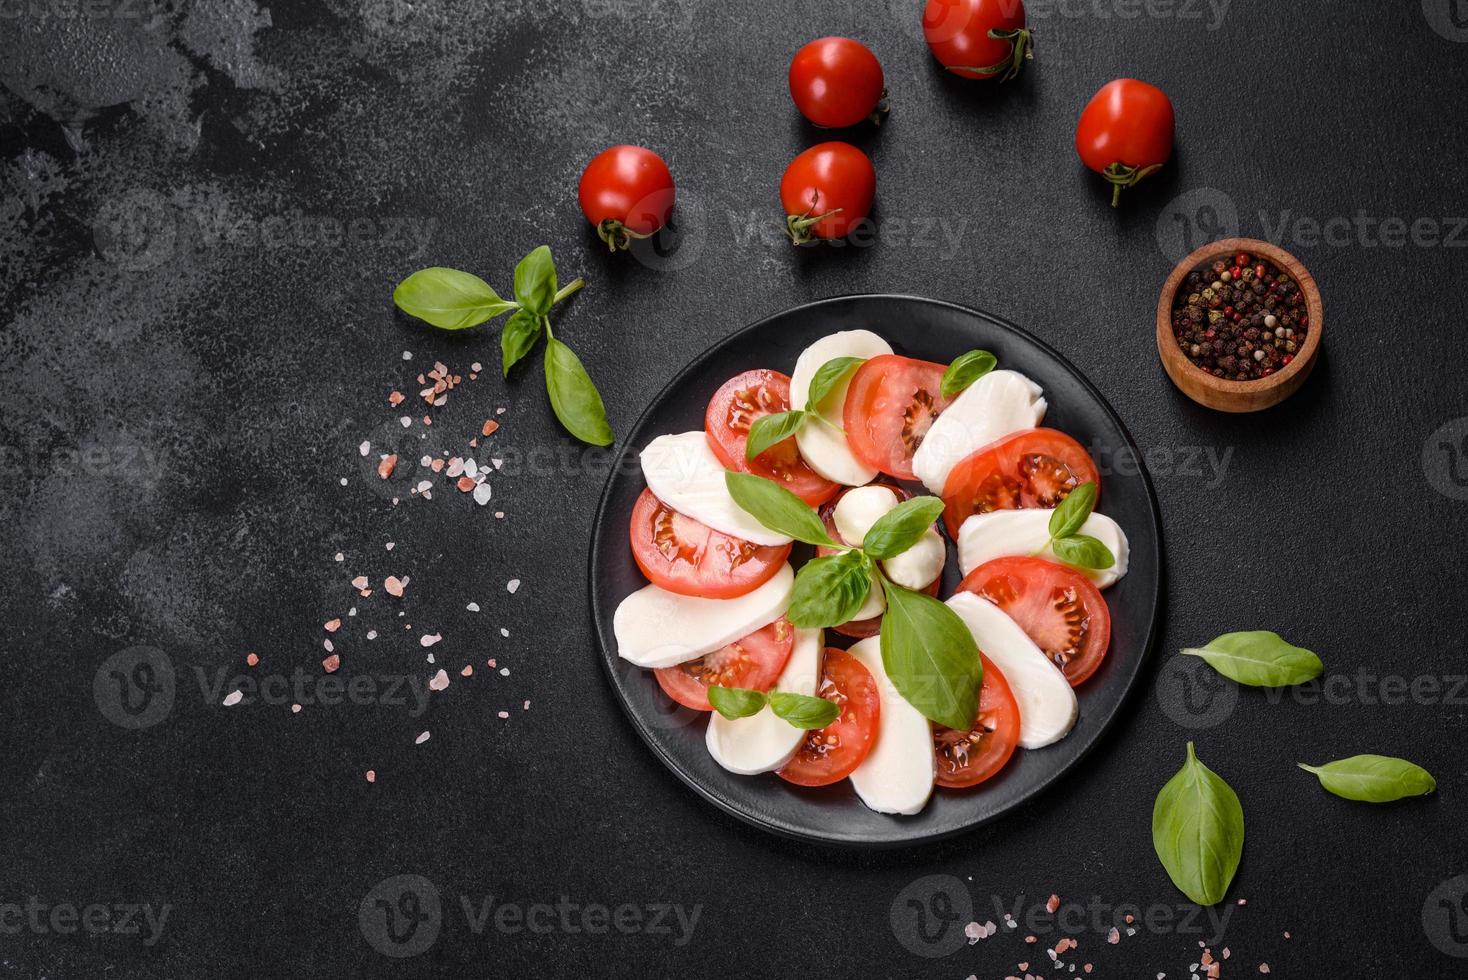 insalata caprese italiana con pomodori a fette, mozzarella foto